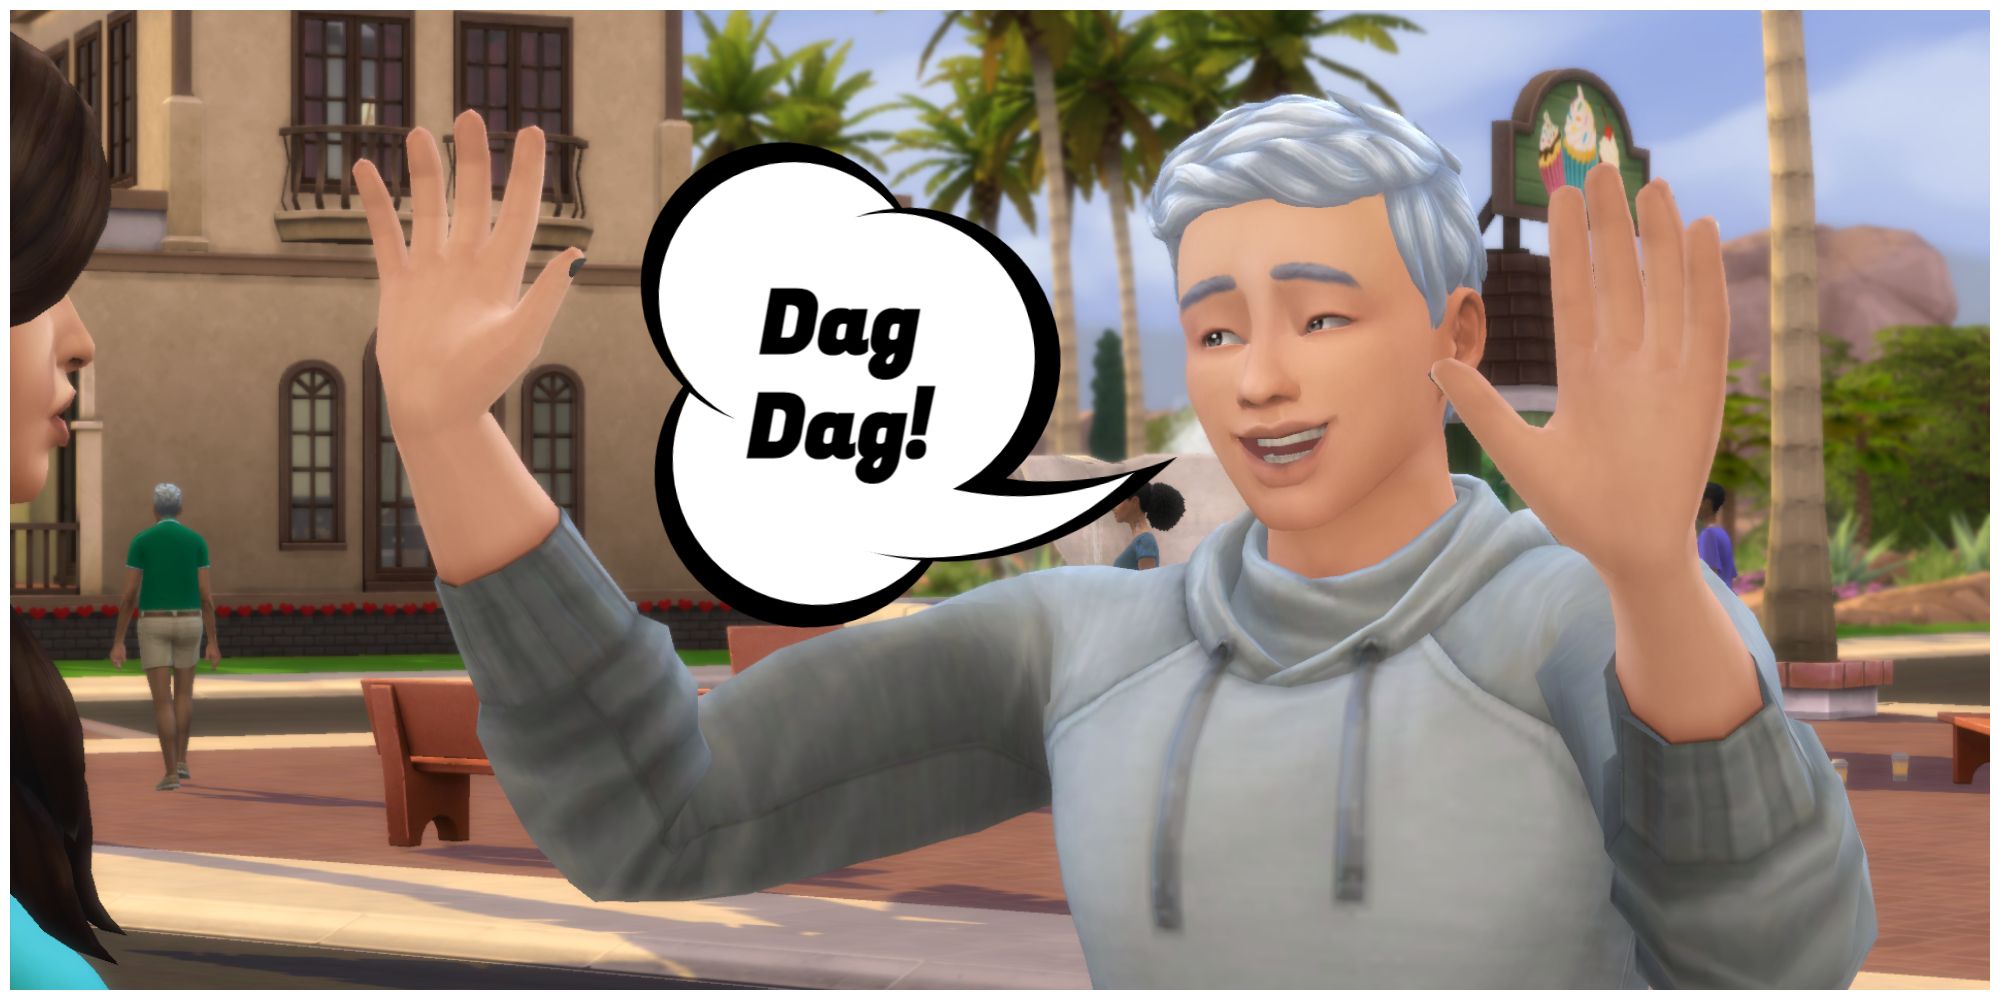 A Sim says goodbye to his friend in Simlish by saying Dag Dag